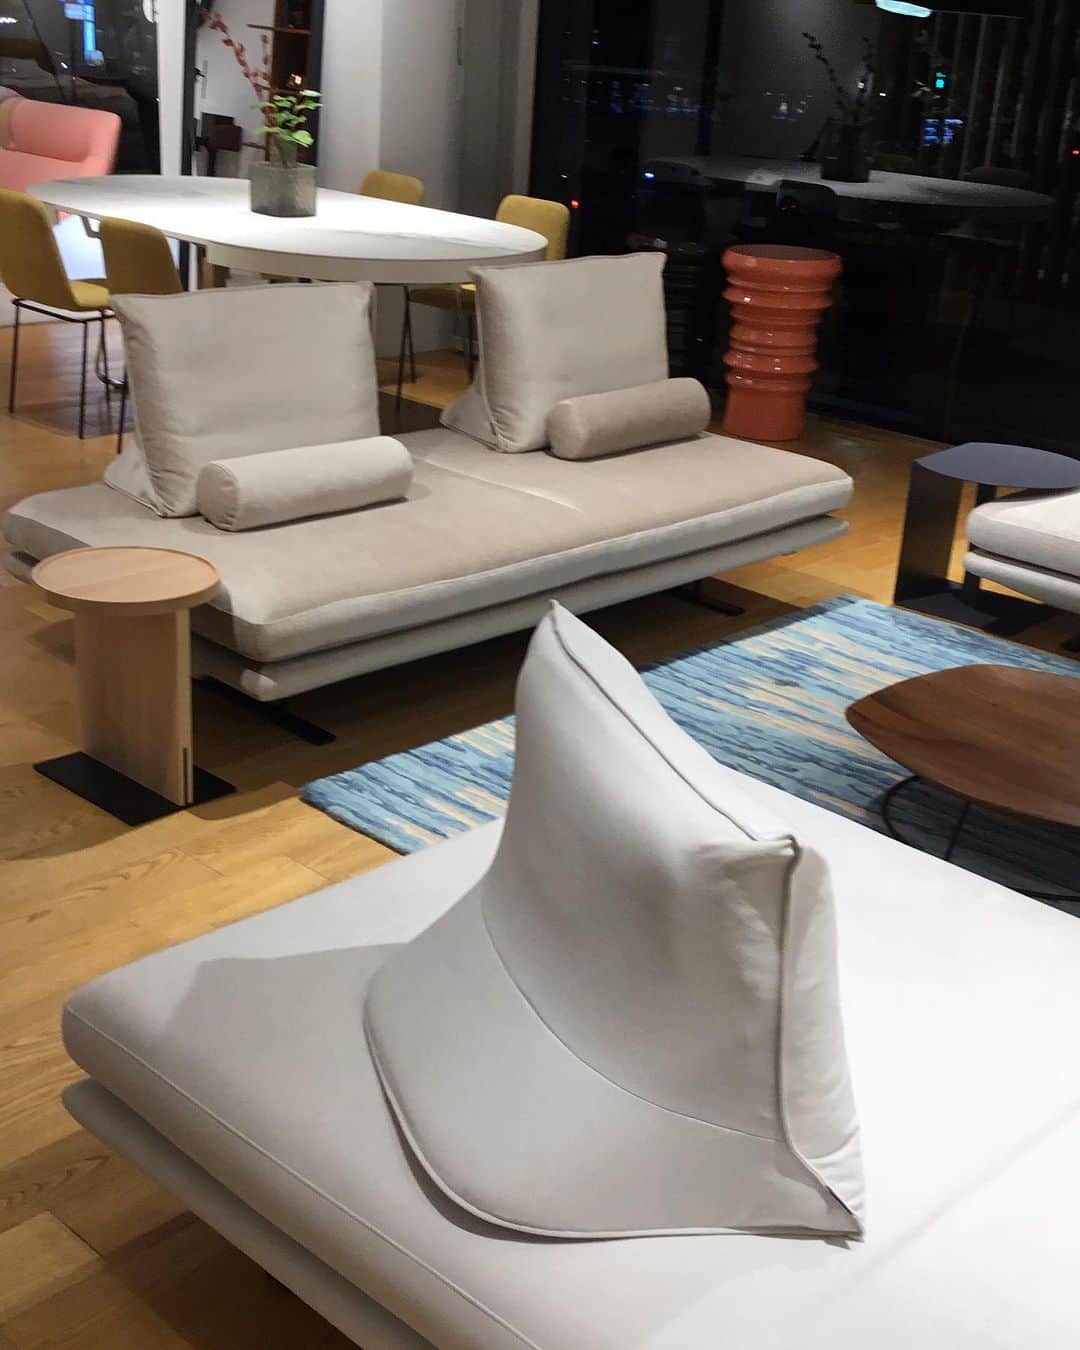 ligne roset shopのインスタグラム：「【ROSETPrado】(ロゼプラド)  リーン・ロゼ銀座では上品な色合いのロゼプラドが揃っています。どれも人気の生地で、同じ生地で発注希望される方がたくさんいらっしゃいます✨  Fabric: スピリット YP9510、ウルトラスエード 5969、Artisan 1409  #ligneroset#lignerosetginza#ginza#interior#room#design#sofa#furniture#room#myligneroset  #リーンロゼ#リーンロゼ銀座#銀座#インテリア#インテリアコーディネート#家具#ソファ#リノベーション#リーンロゼのある暮らし  @ligneroset_jp」